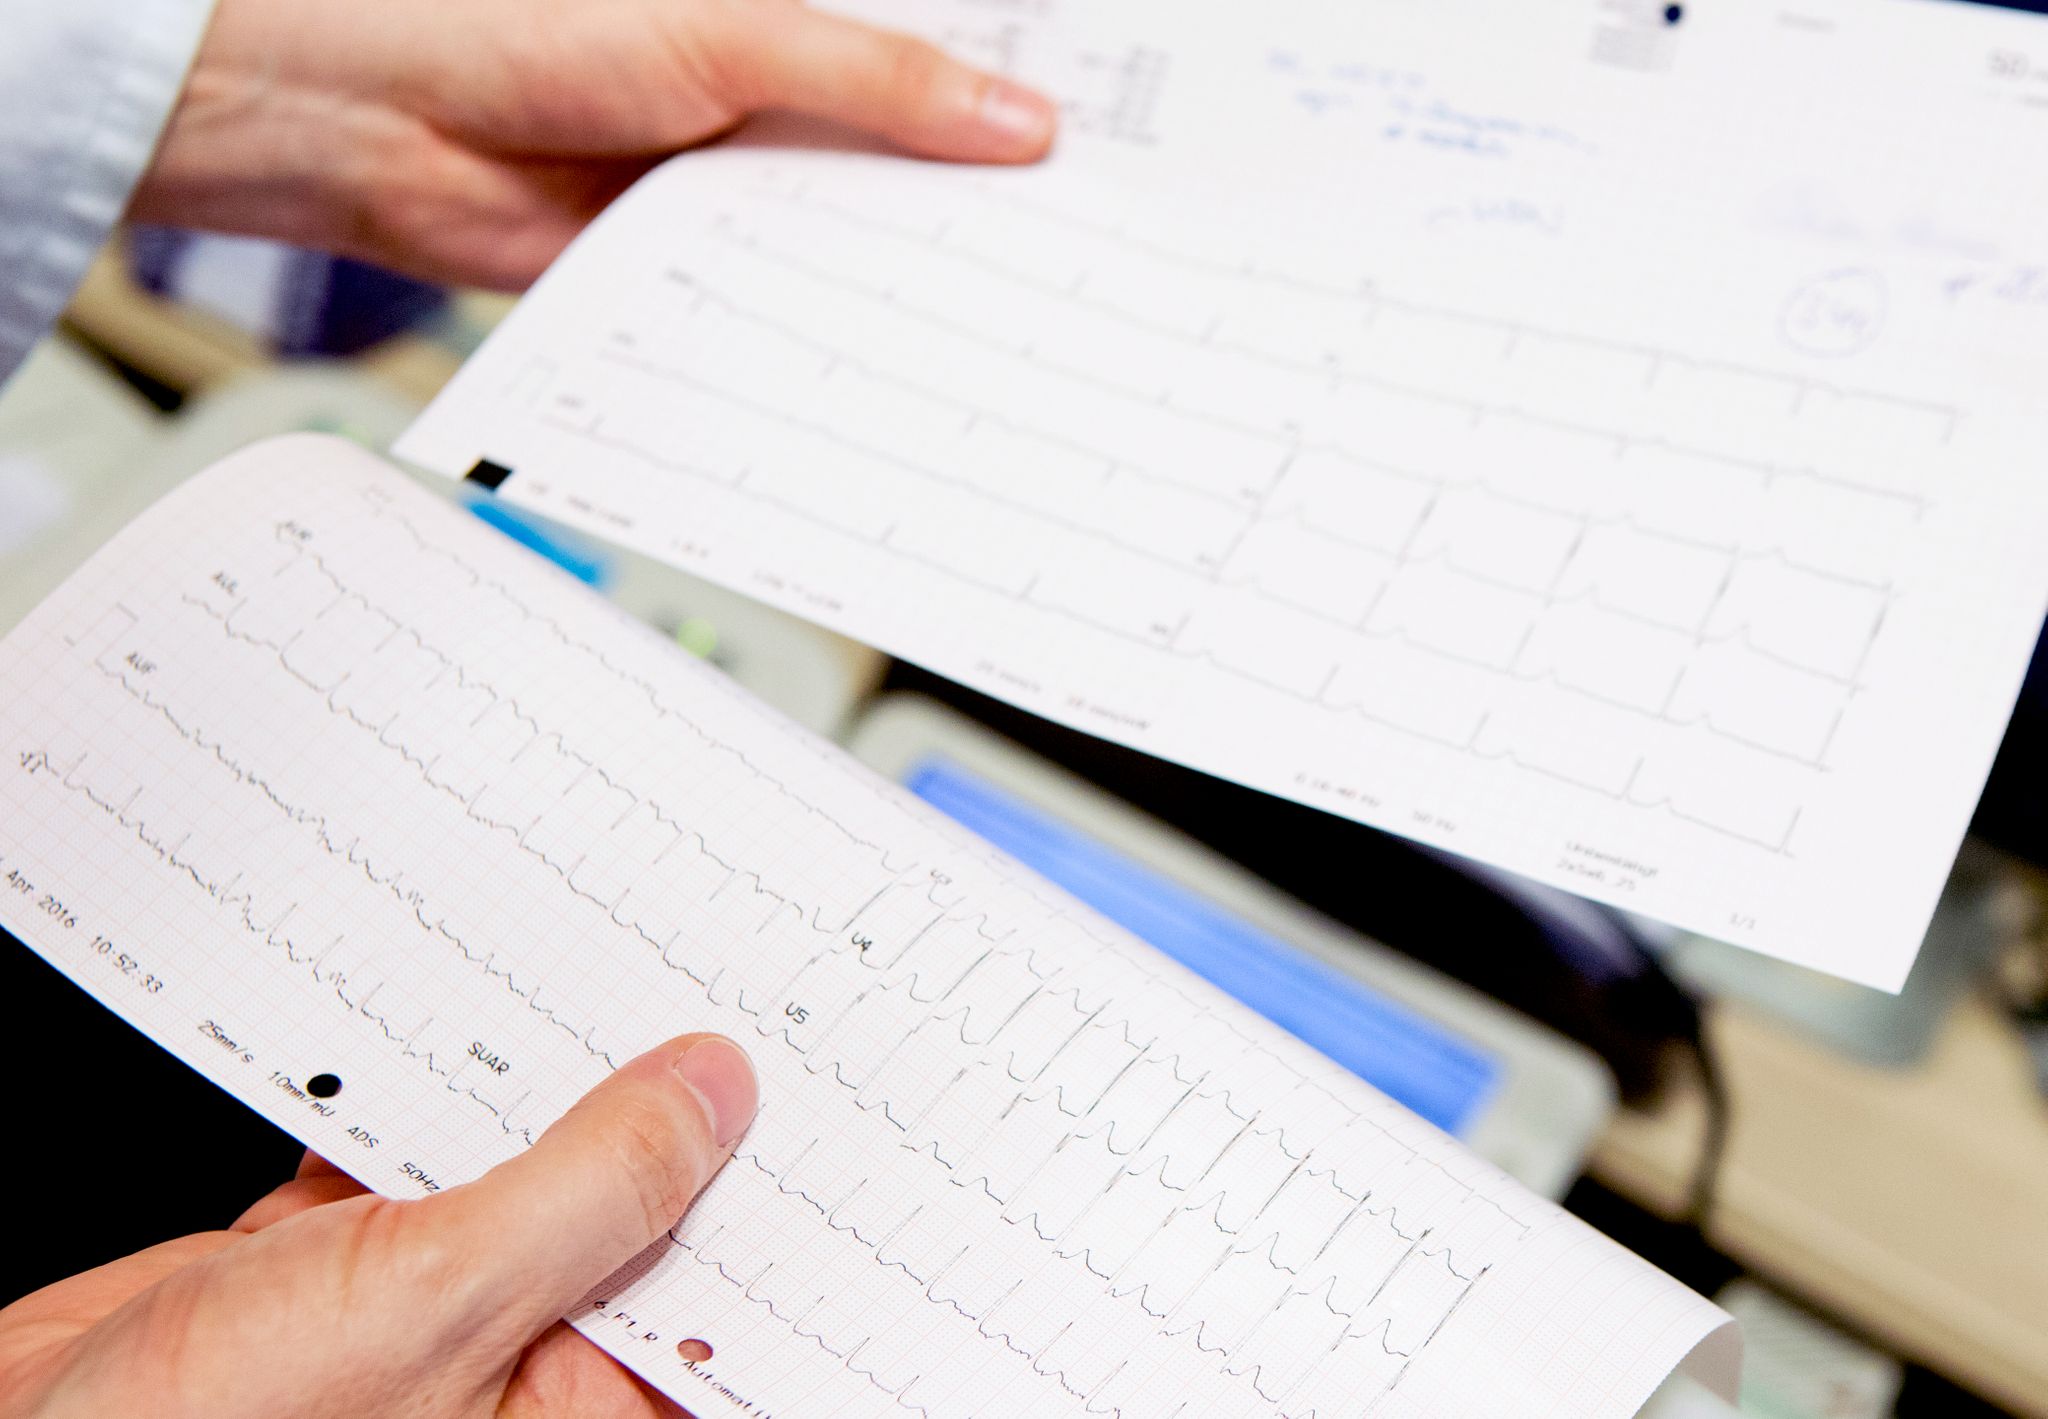 En cuanto a los atletas que presentan síntomas cardiopulmonares, “la evaluación inicial debería ser idealmente con un ECG, cTn (biomarcador troponina cardiaca) y un ecocardiograma (Foto: Oliver Krato/dpa)